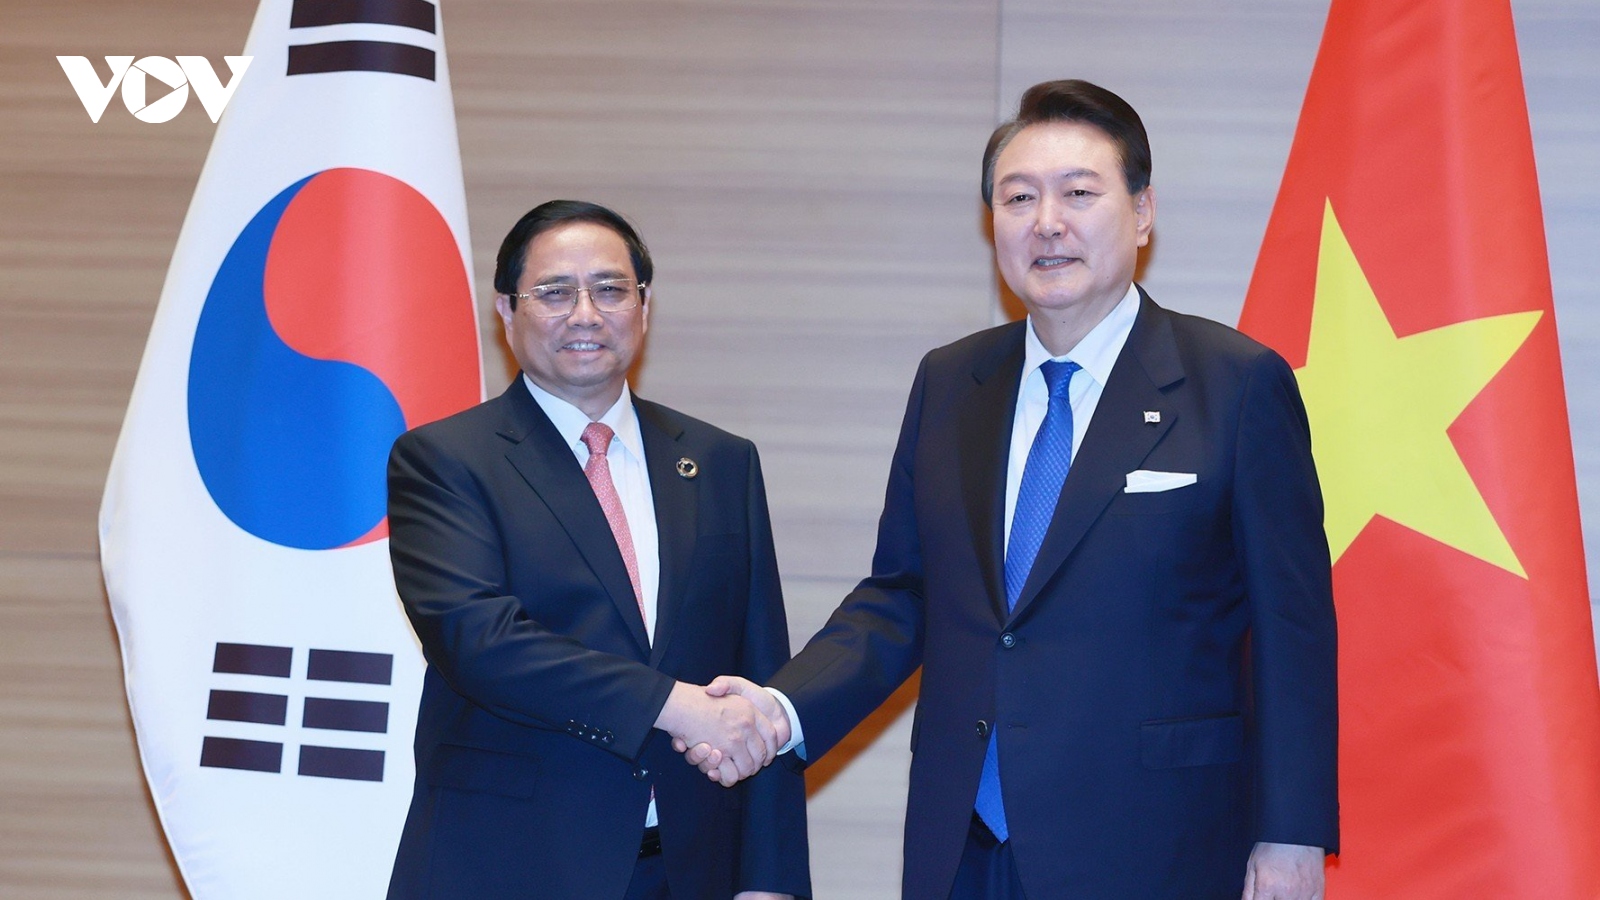 Thủ tướng Phạm Minh Chính gặp Tổng thống Hàn Quốc nhân dịp Hội nghị Thượng đỉnh G7